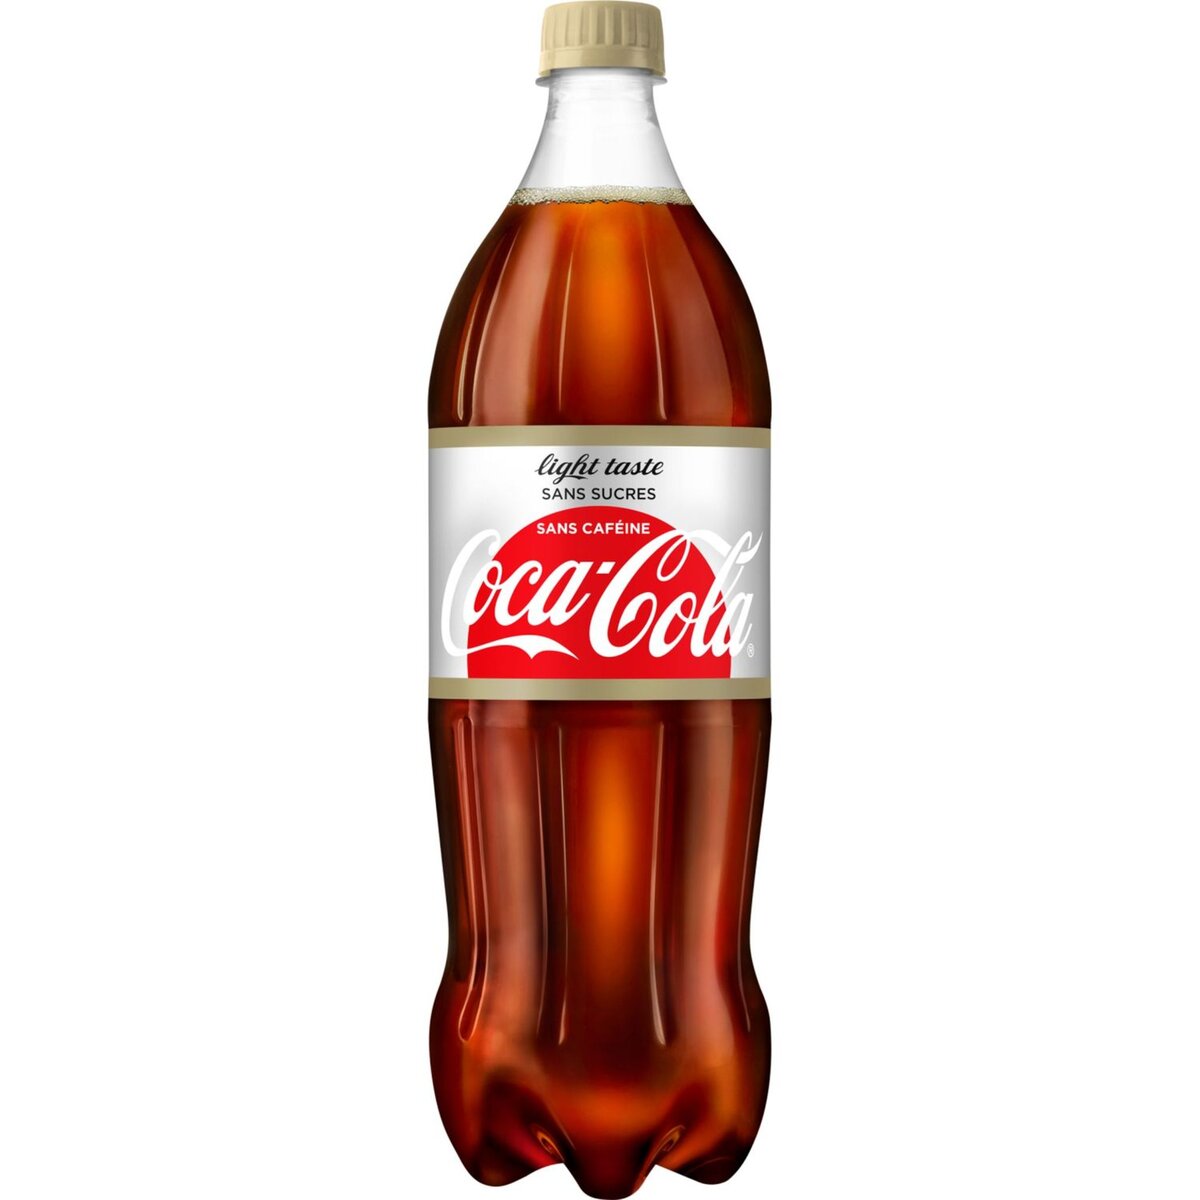 COCA-COLA Coca-Cola sans caféine light 1,25l